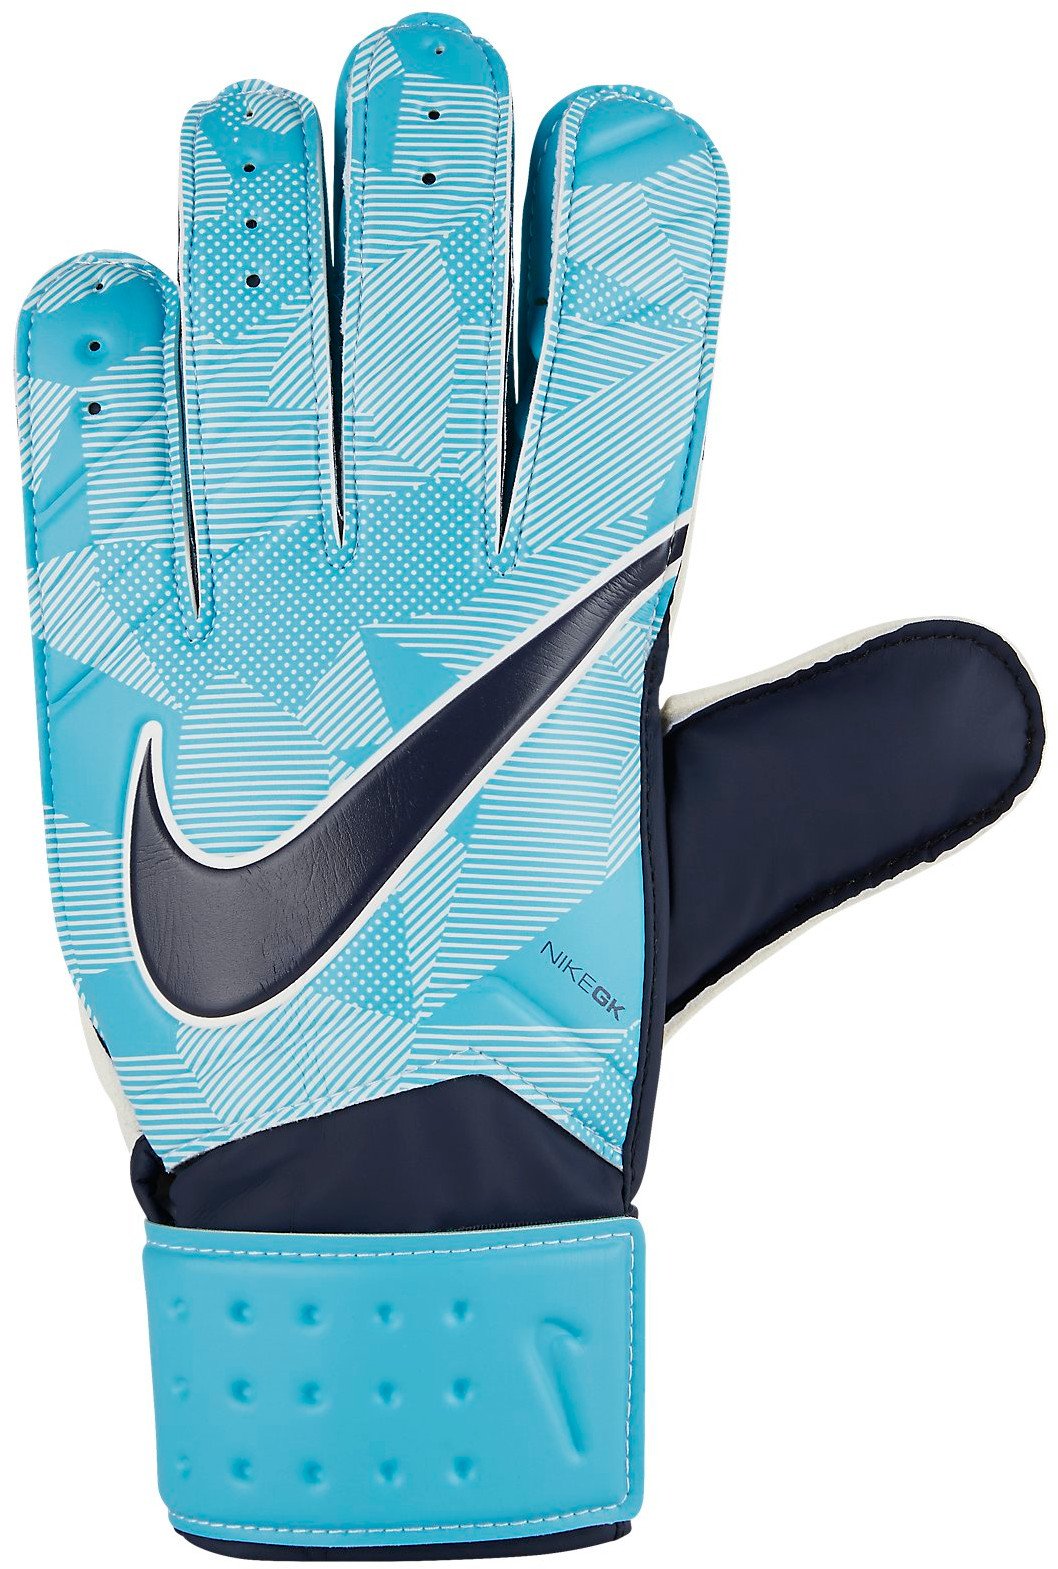 Goalkeeper's gloves Nike NK GK MTCH